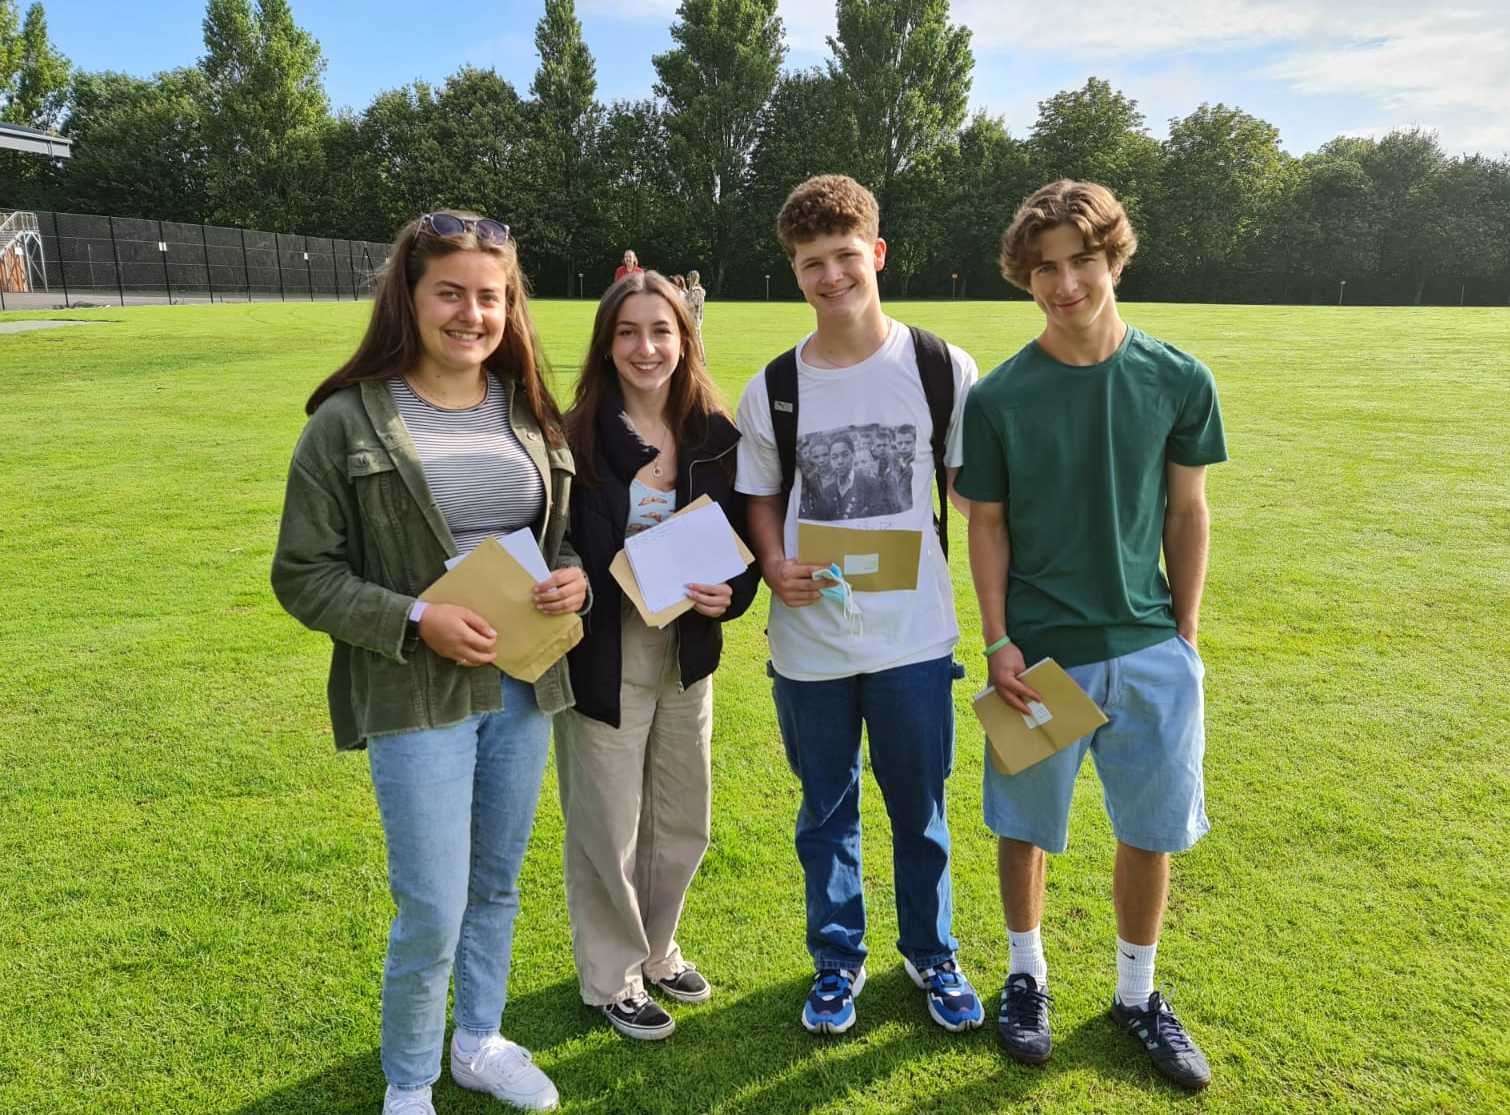 Highworth Grammar School pupils (l-r) Rosie Sweatman, Lizzie Pudney, Ollie Ridgway and Sonny Welch